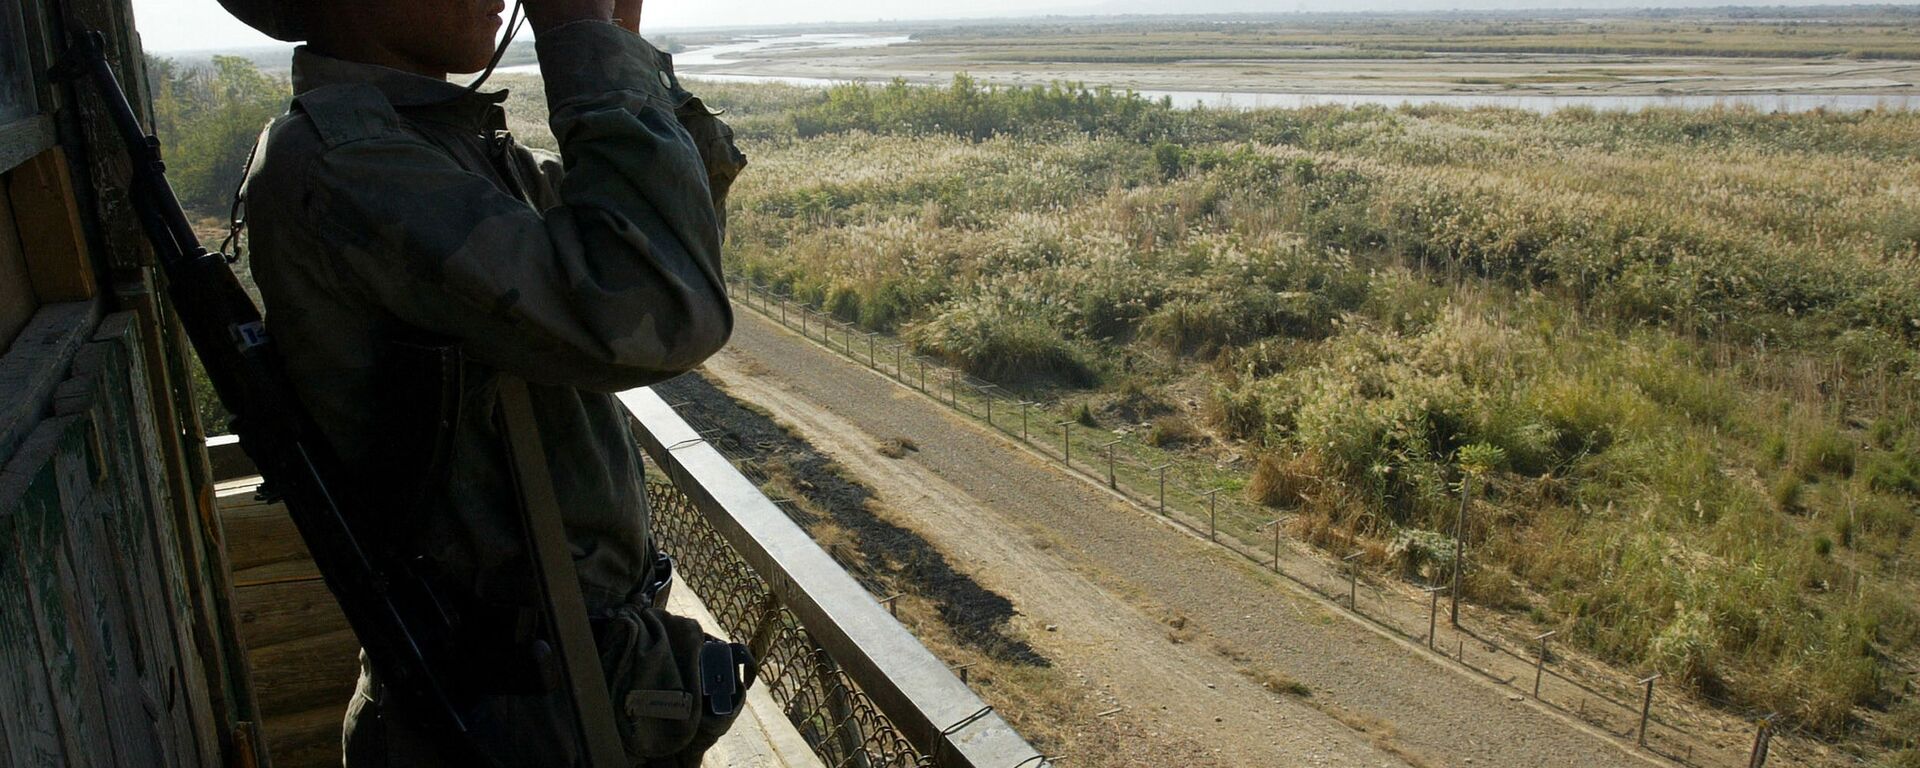 Солдат таджикской пограничной службы патрулирует реку Пяндж на границе с Афганистаном в 220 км от Душанбе - Sputnik Азербайджан, 1920, 08.07.2021